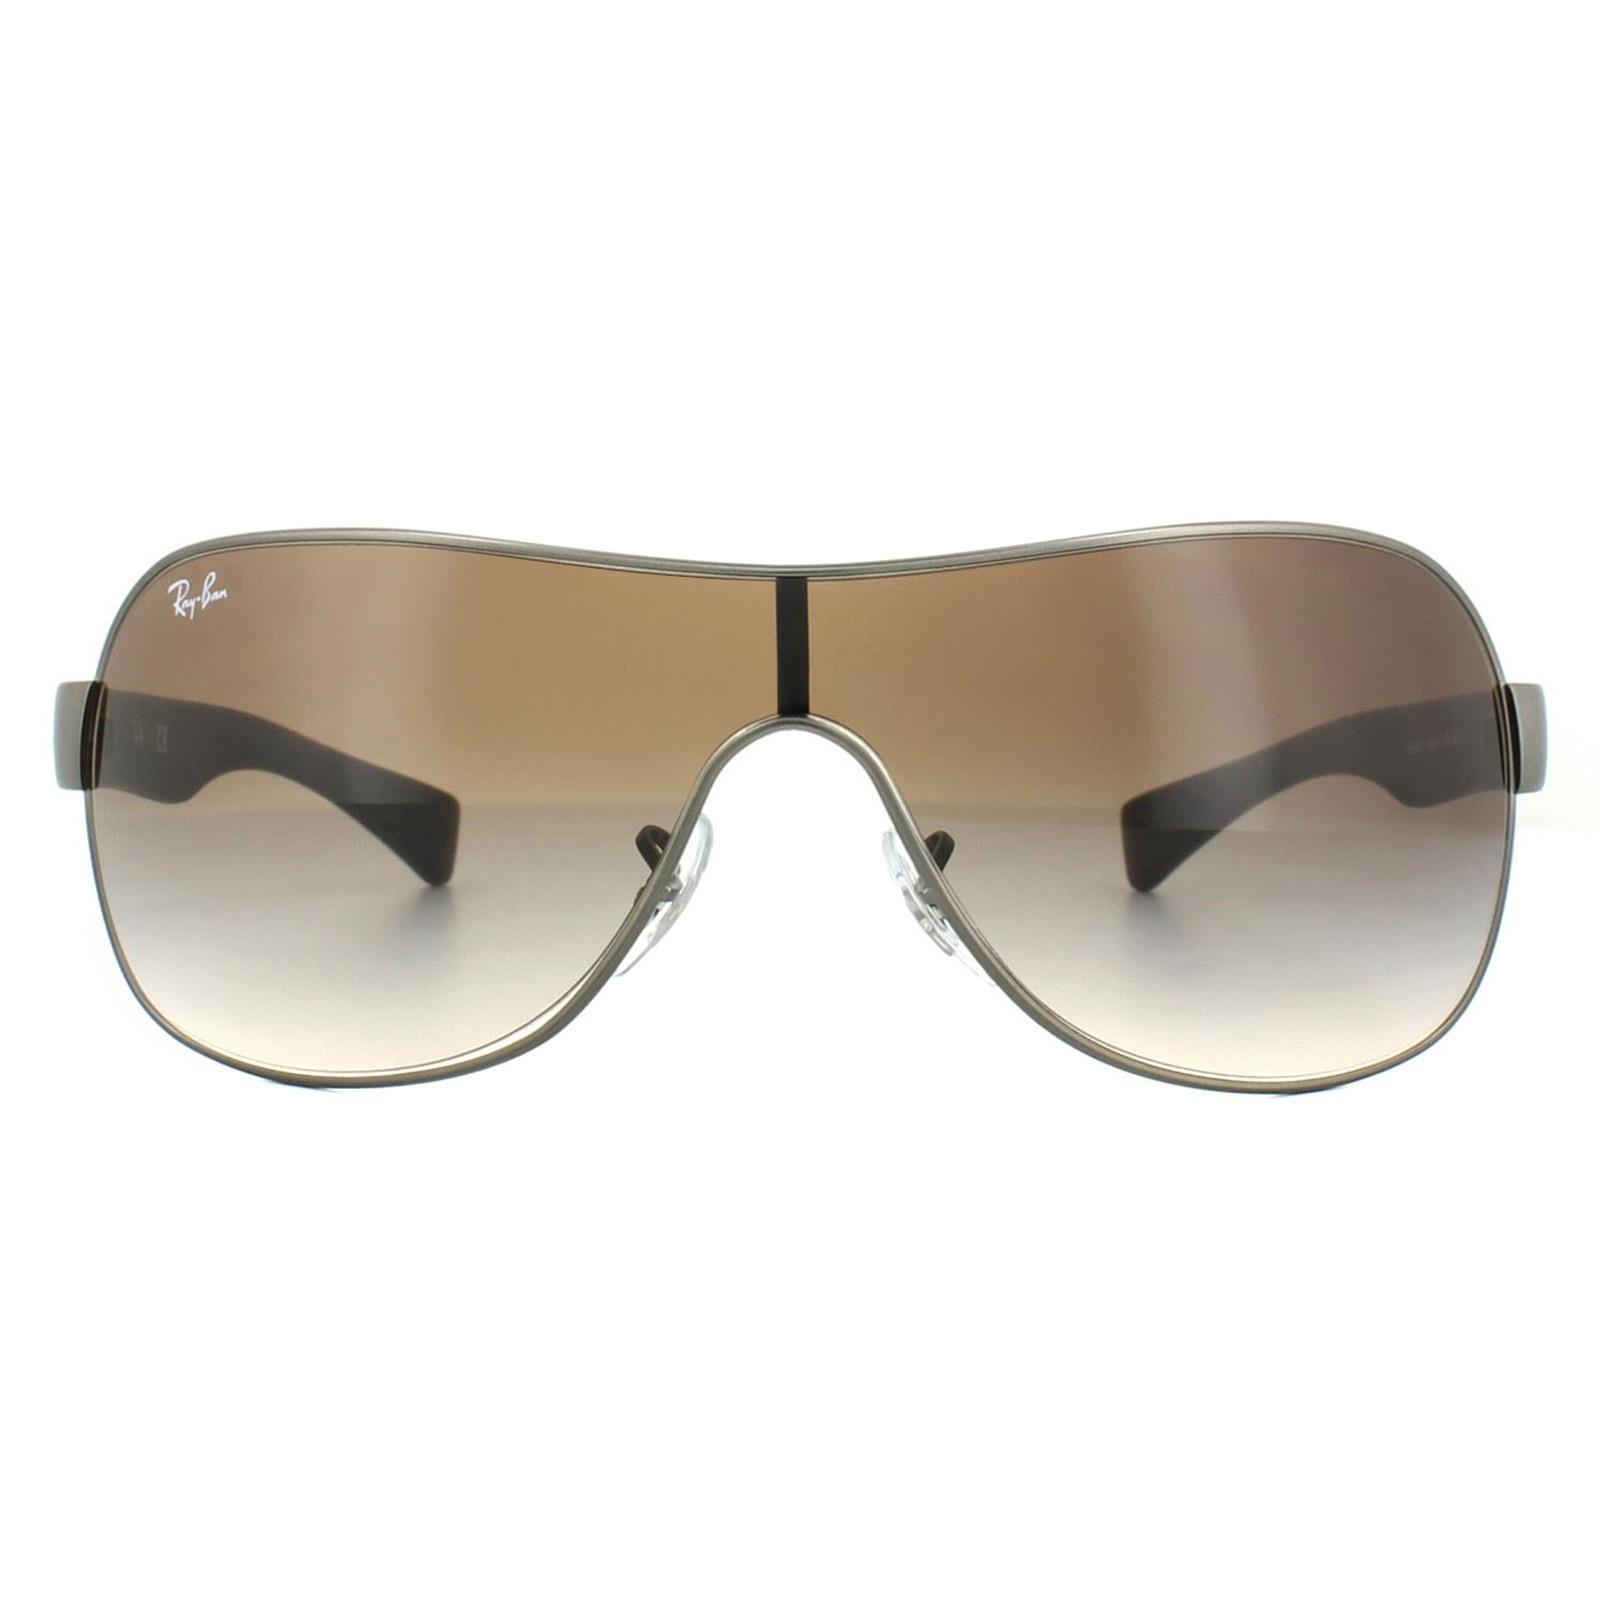 цена Солнцезащитные очки с градиентом матового коричневого цвета из бронзового металла Shield Ray-Ban, серый